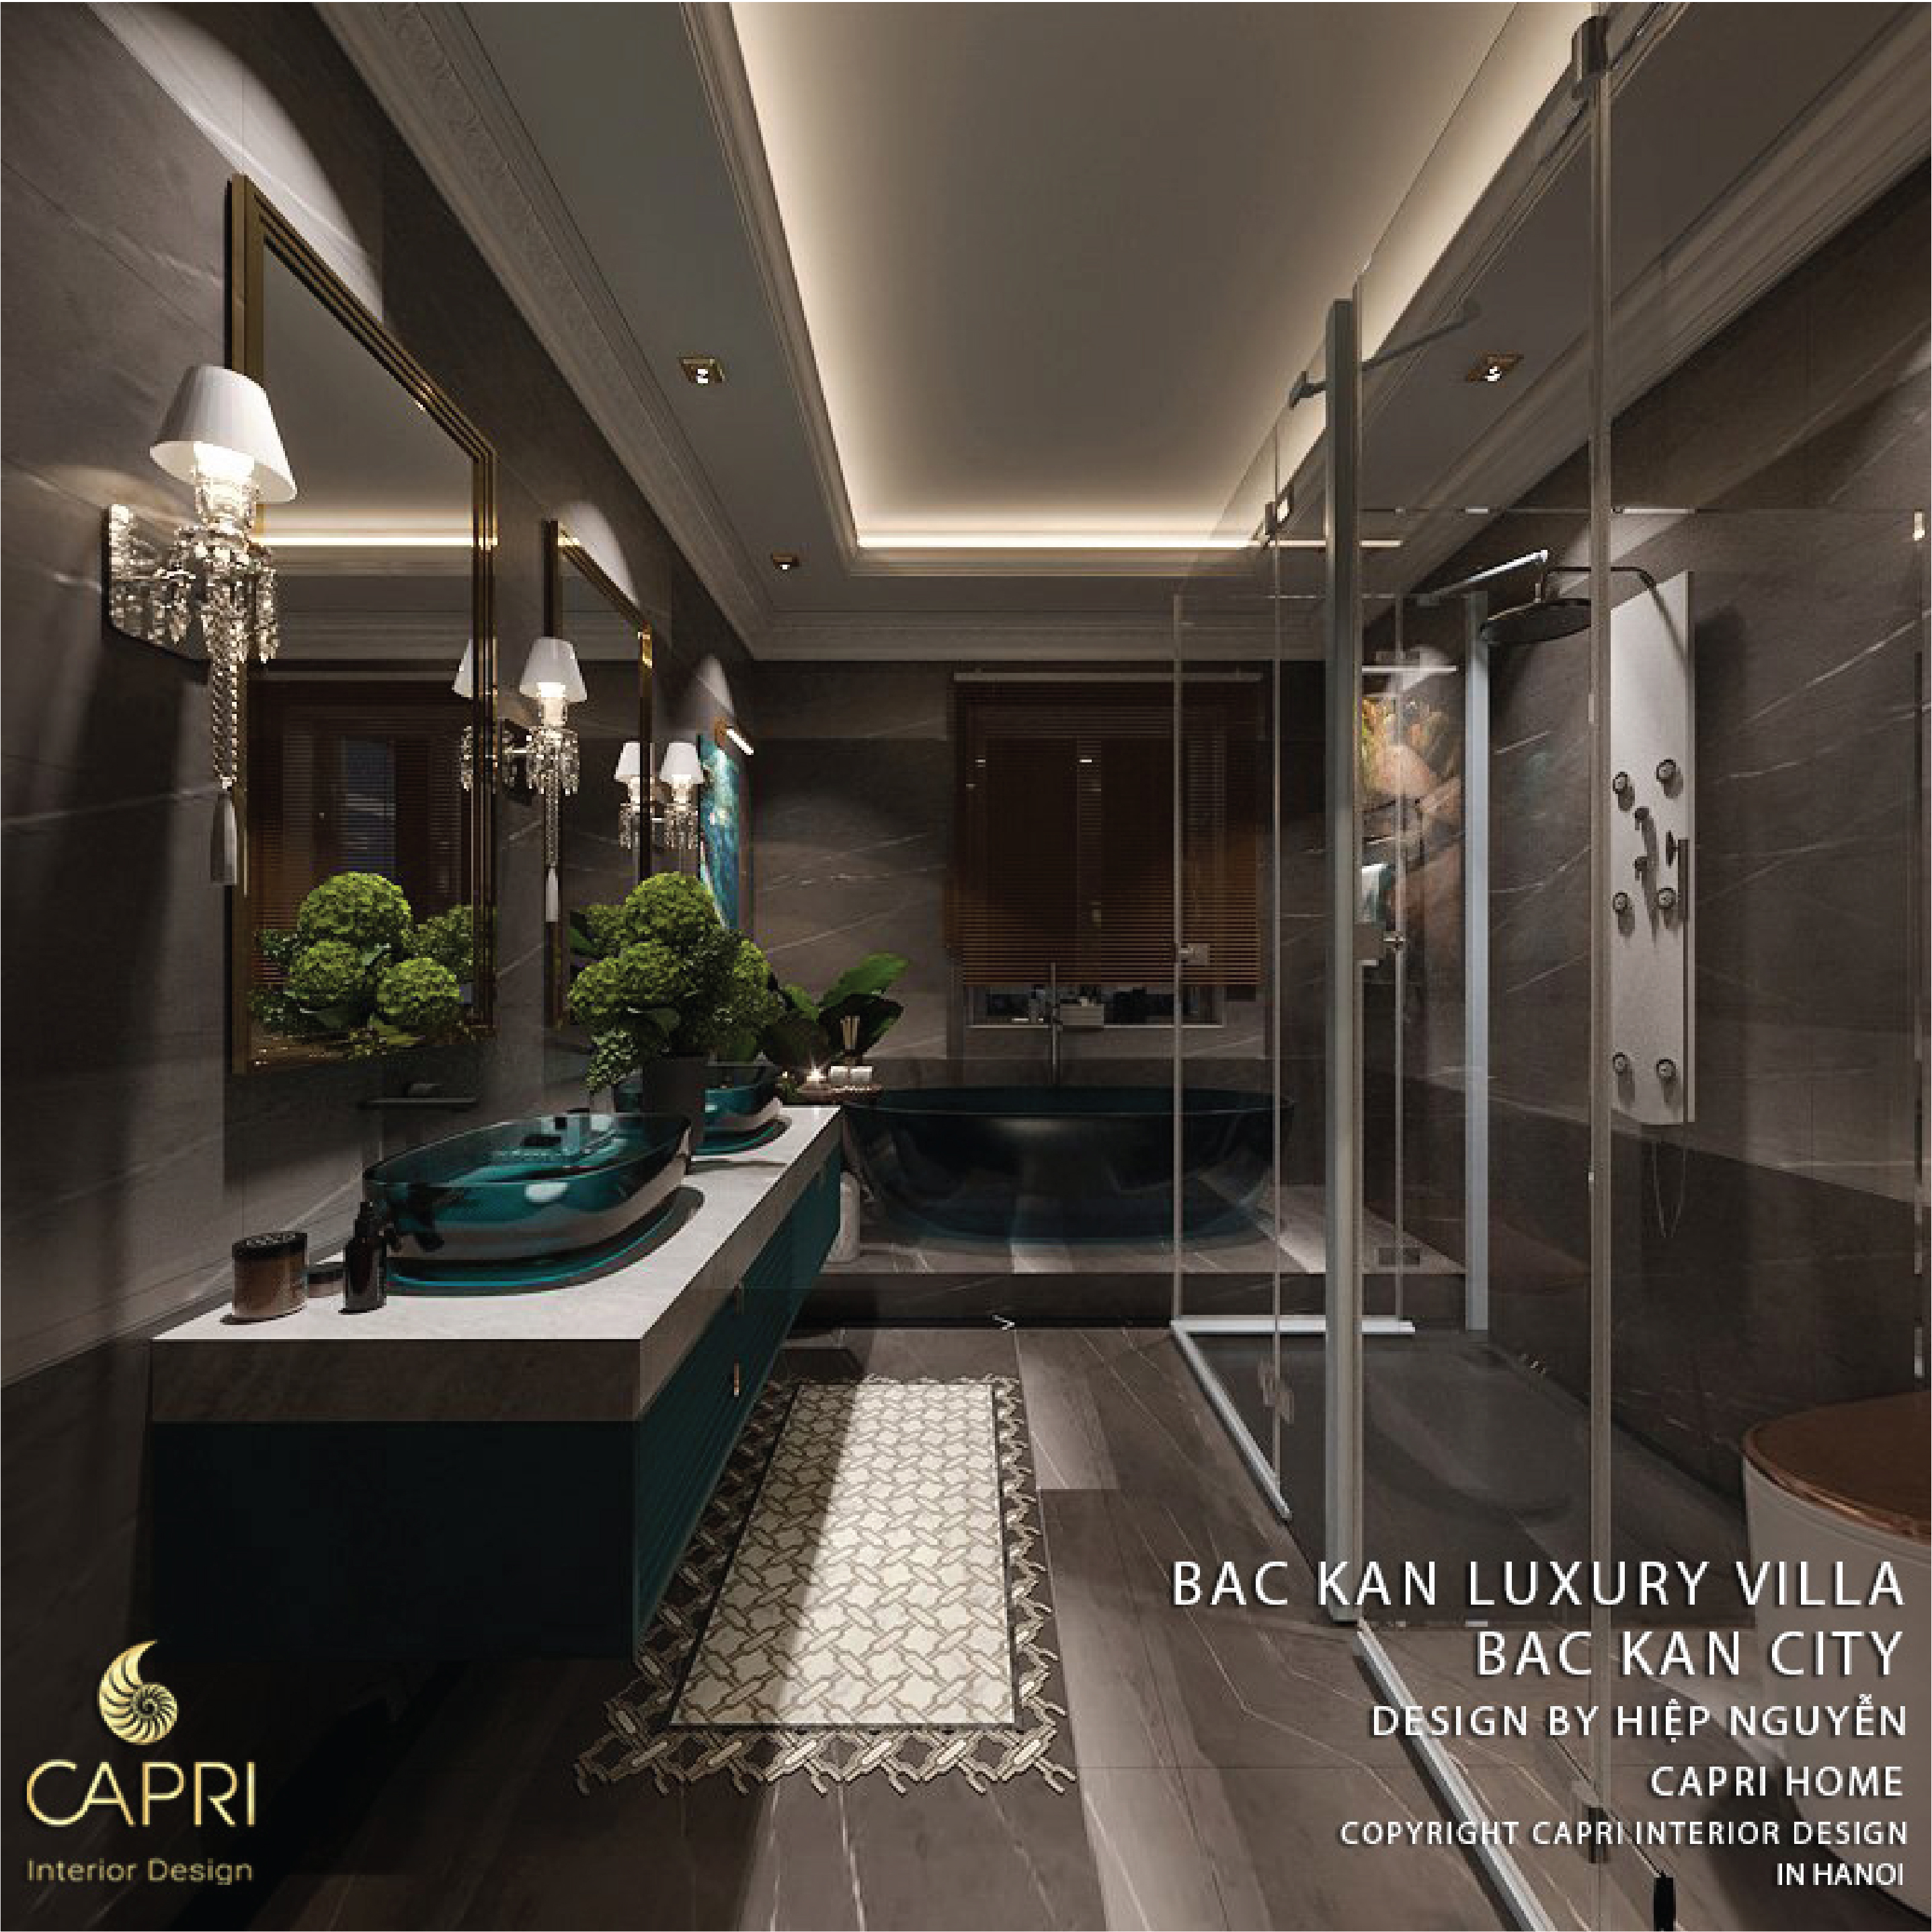 Luxury Bathroom By CAPRI The Luxury Home 7